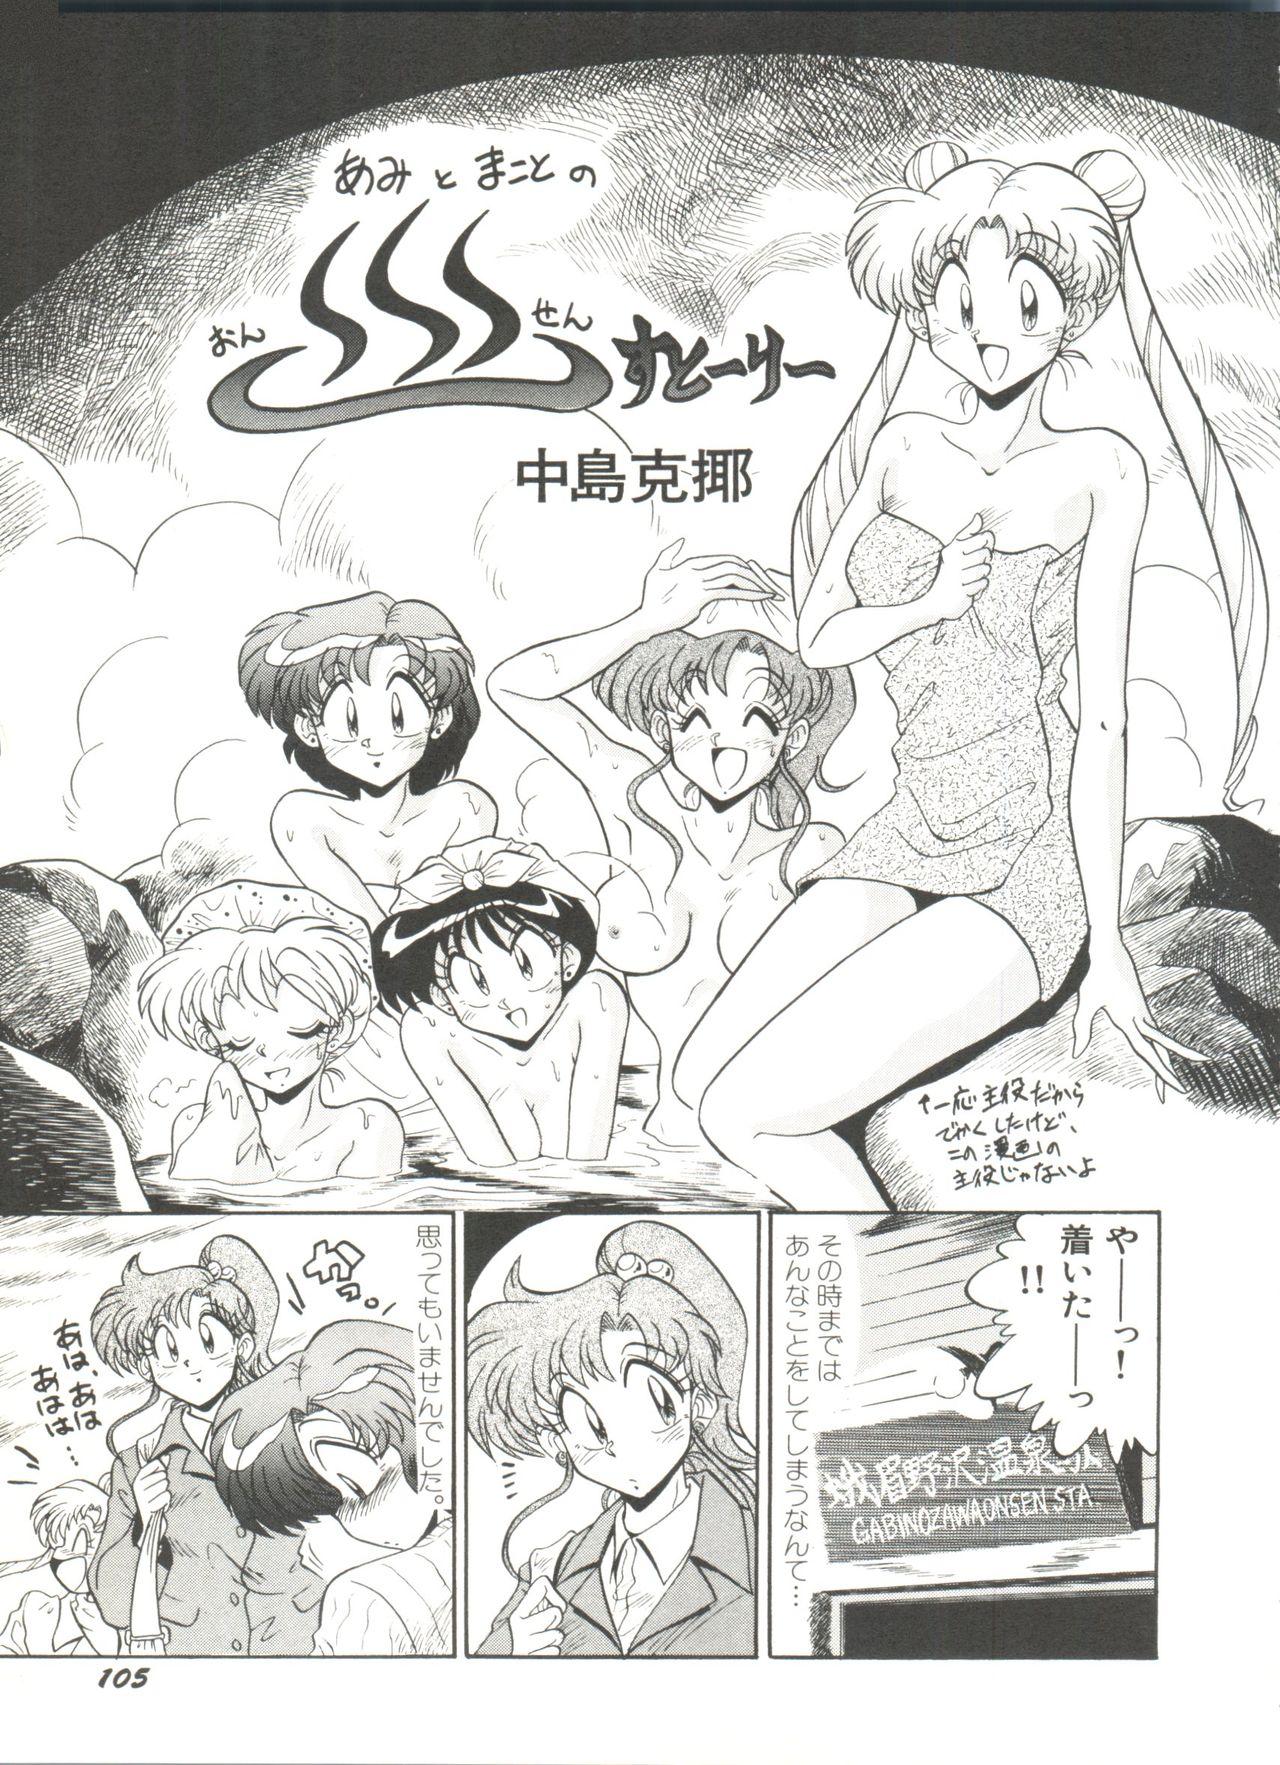 Bishoujo Doujinshi Anthology 2 - Moon Paradise 1 Tsuki no Rakuen 107